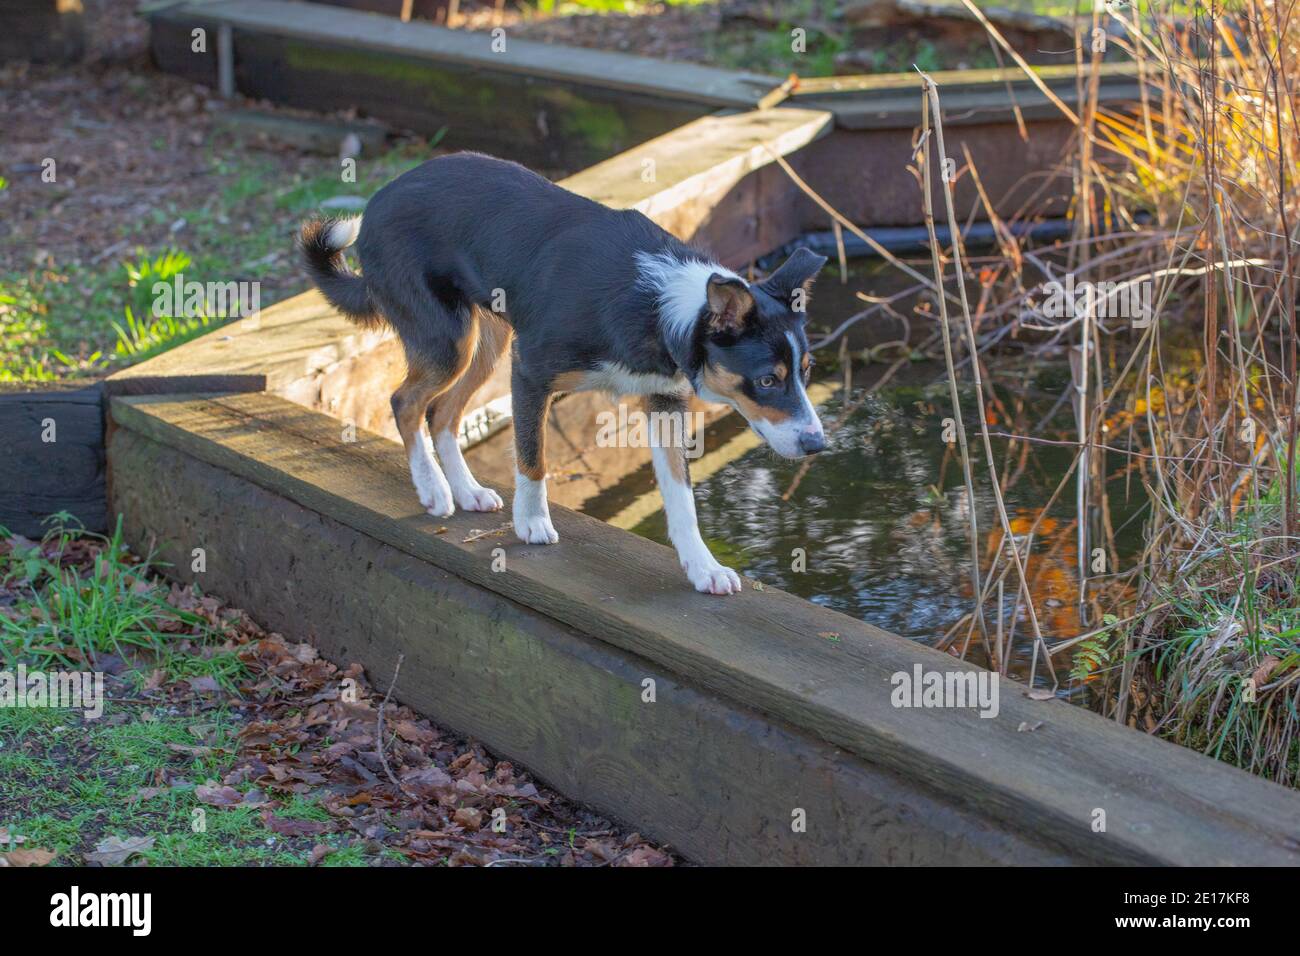 Tri-colored Border Collie Dog (Canis lupus familiaris). Mascota doméstica, compañero, trabajando, raza pastora. Walkng en una tabla alrededor de un estanque del jardín. Foto de stock